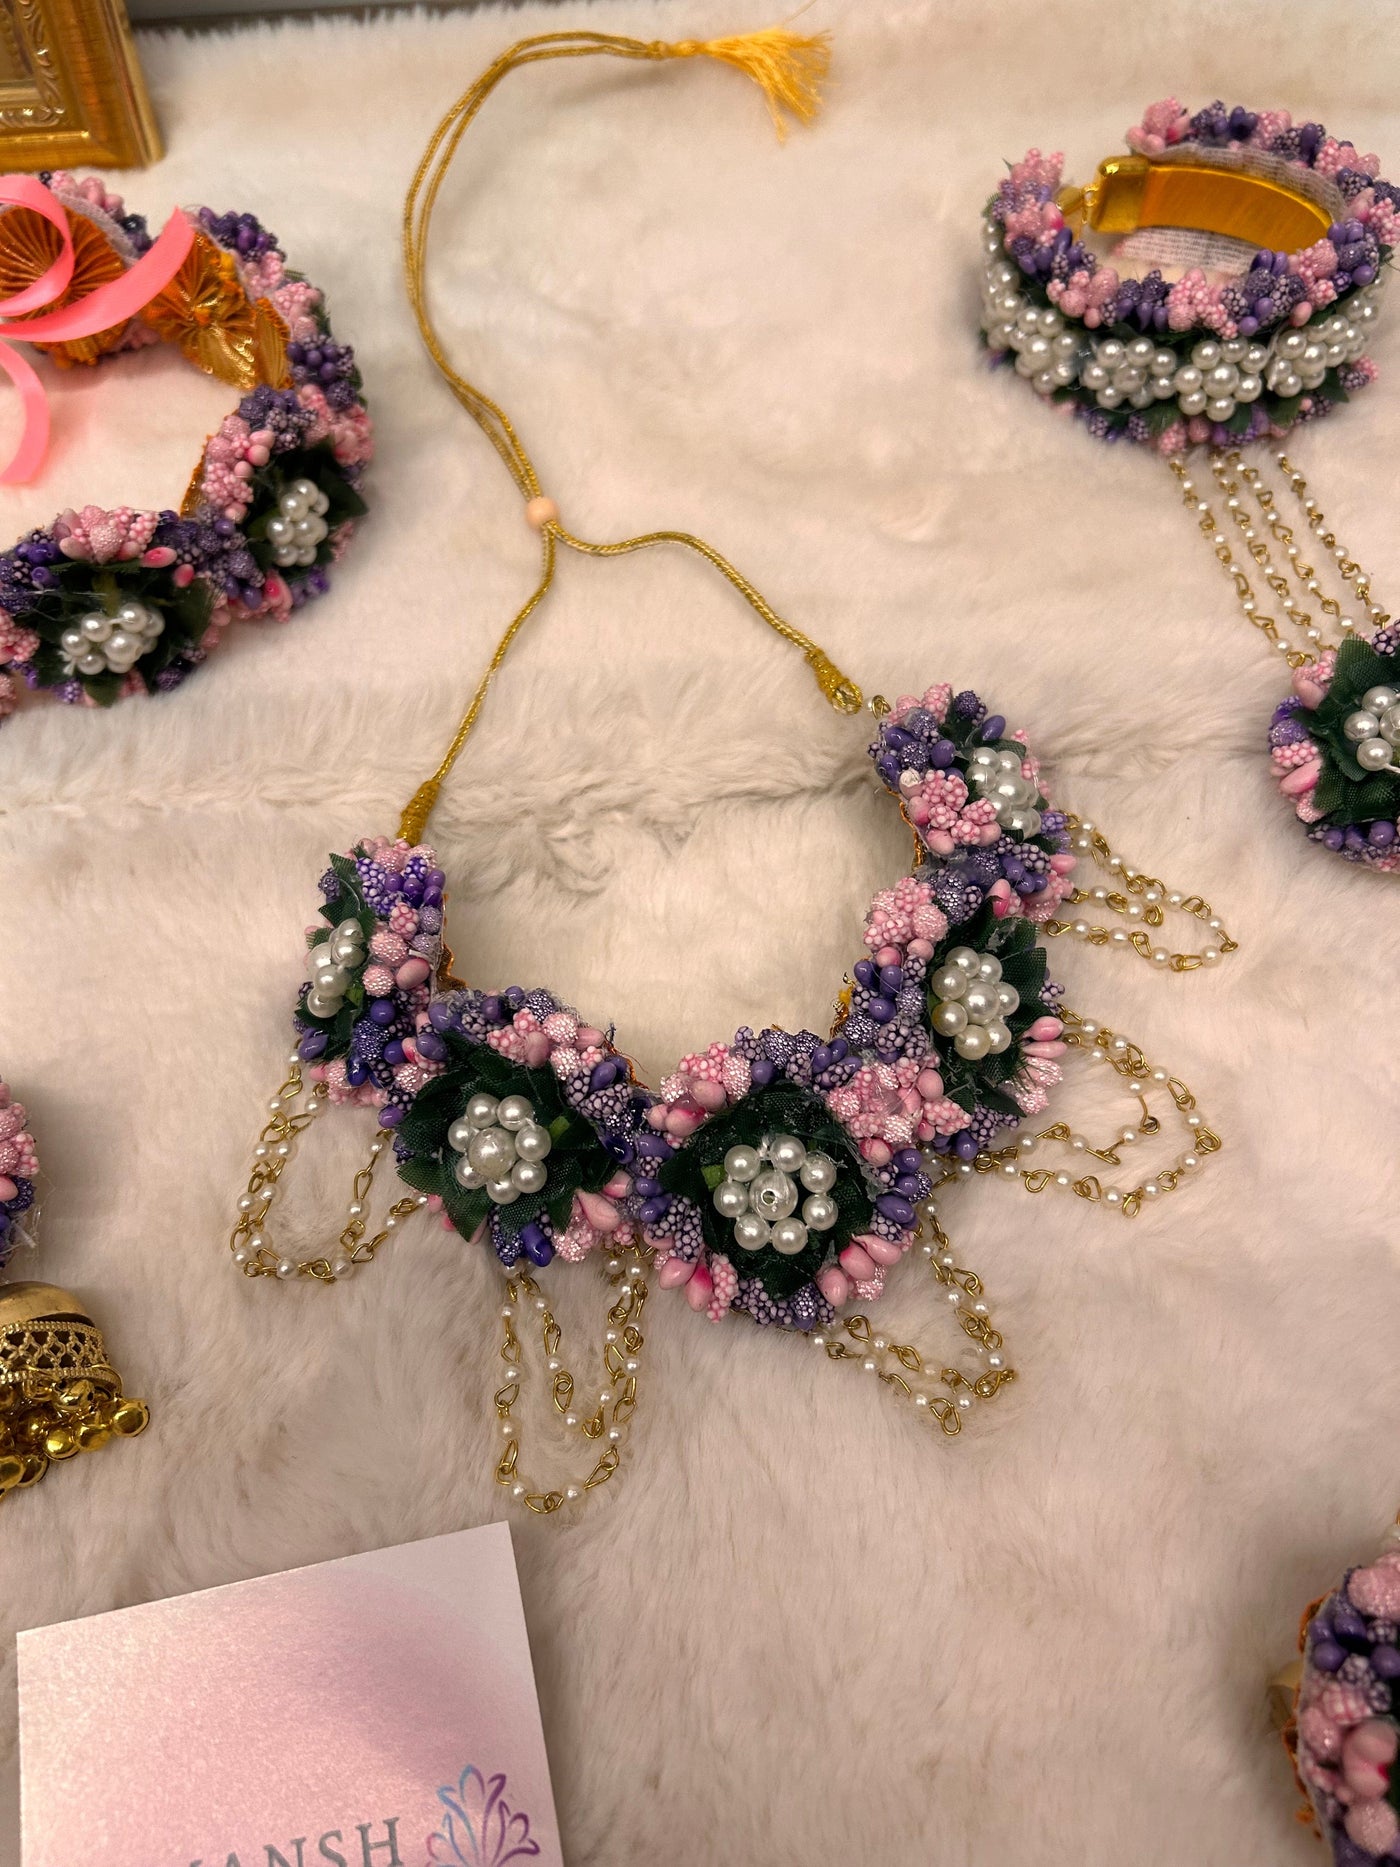 Lamansh 6 April floral set Pink Purple LAMANSH® Gorgeous 🌺 Lilac - Pink Bridal Floral Jewellery Set for Mehendi Function / Artificial Flower Jewelry set